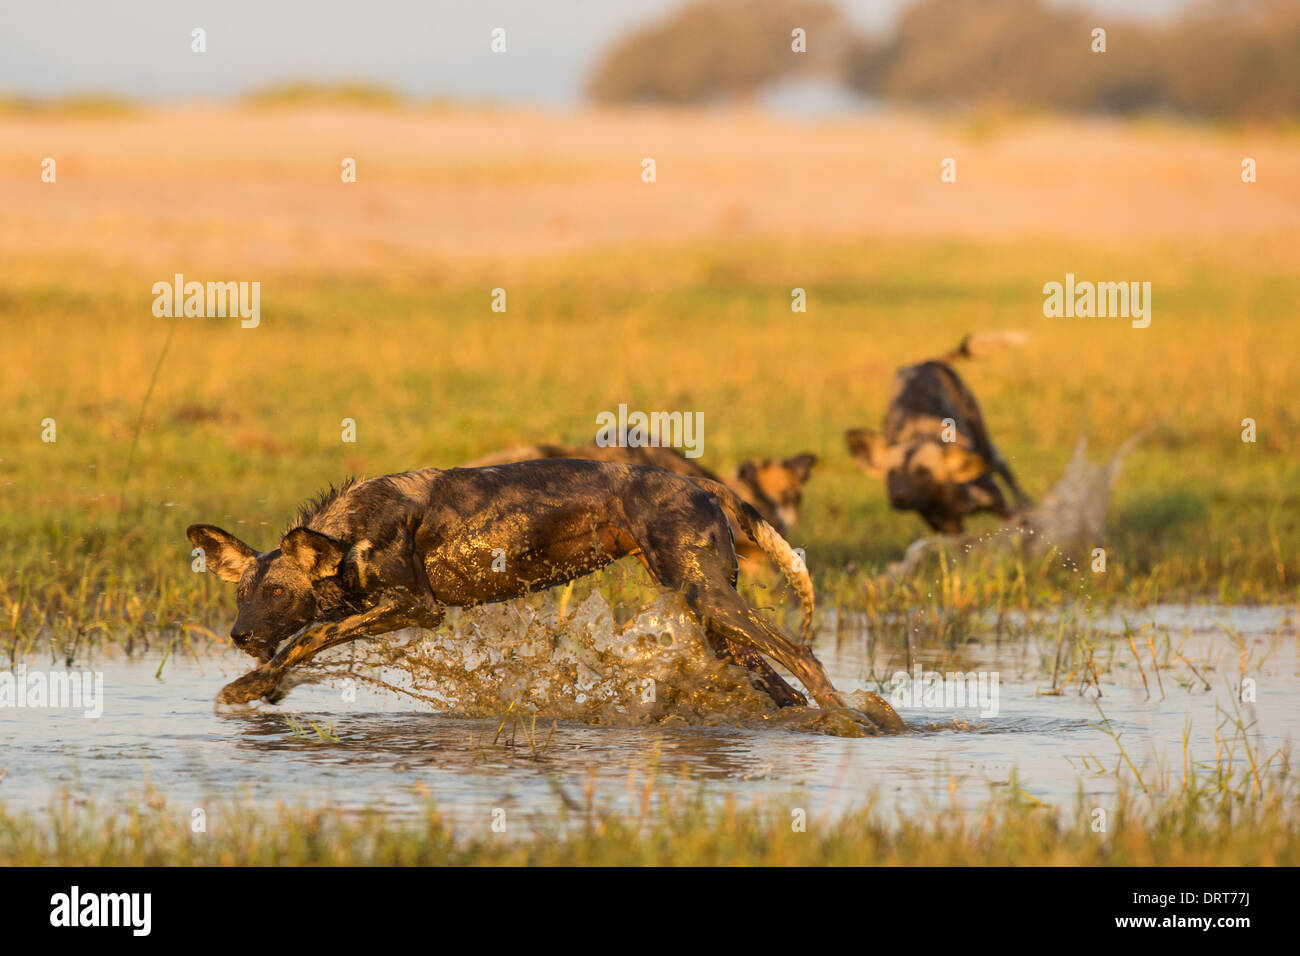 Wild Dog (Lycaon pictus) splashing through water Stock Photo